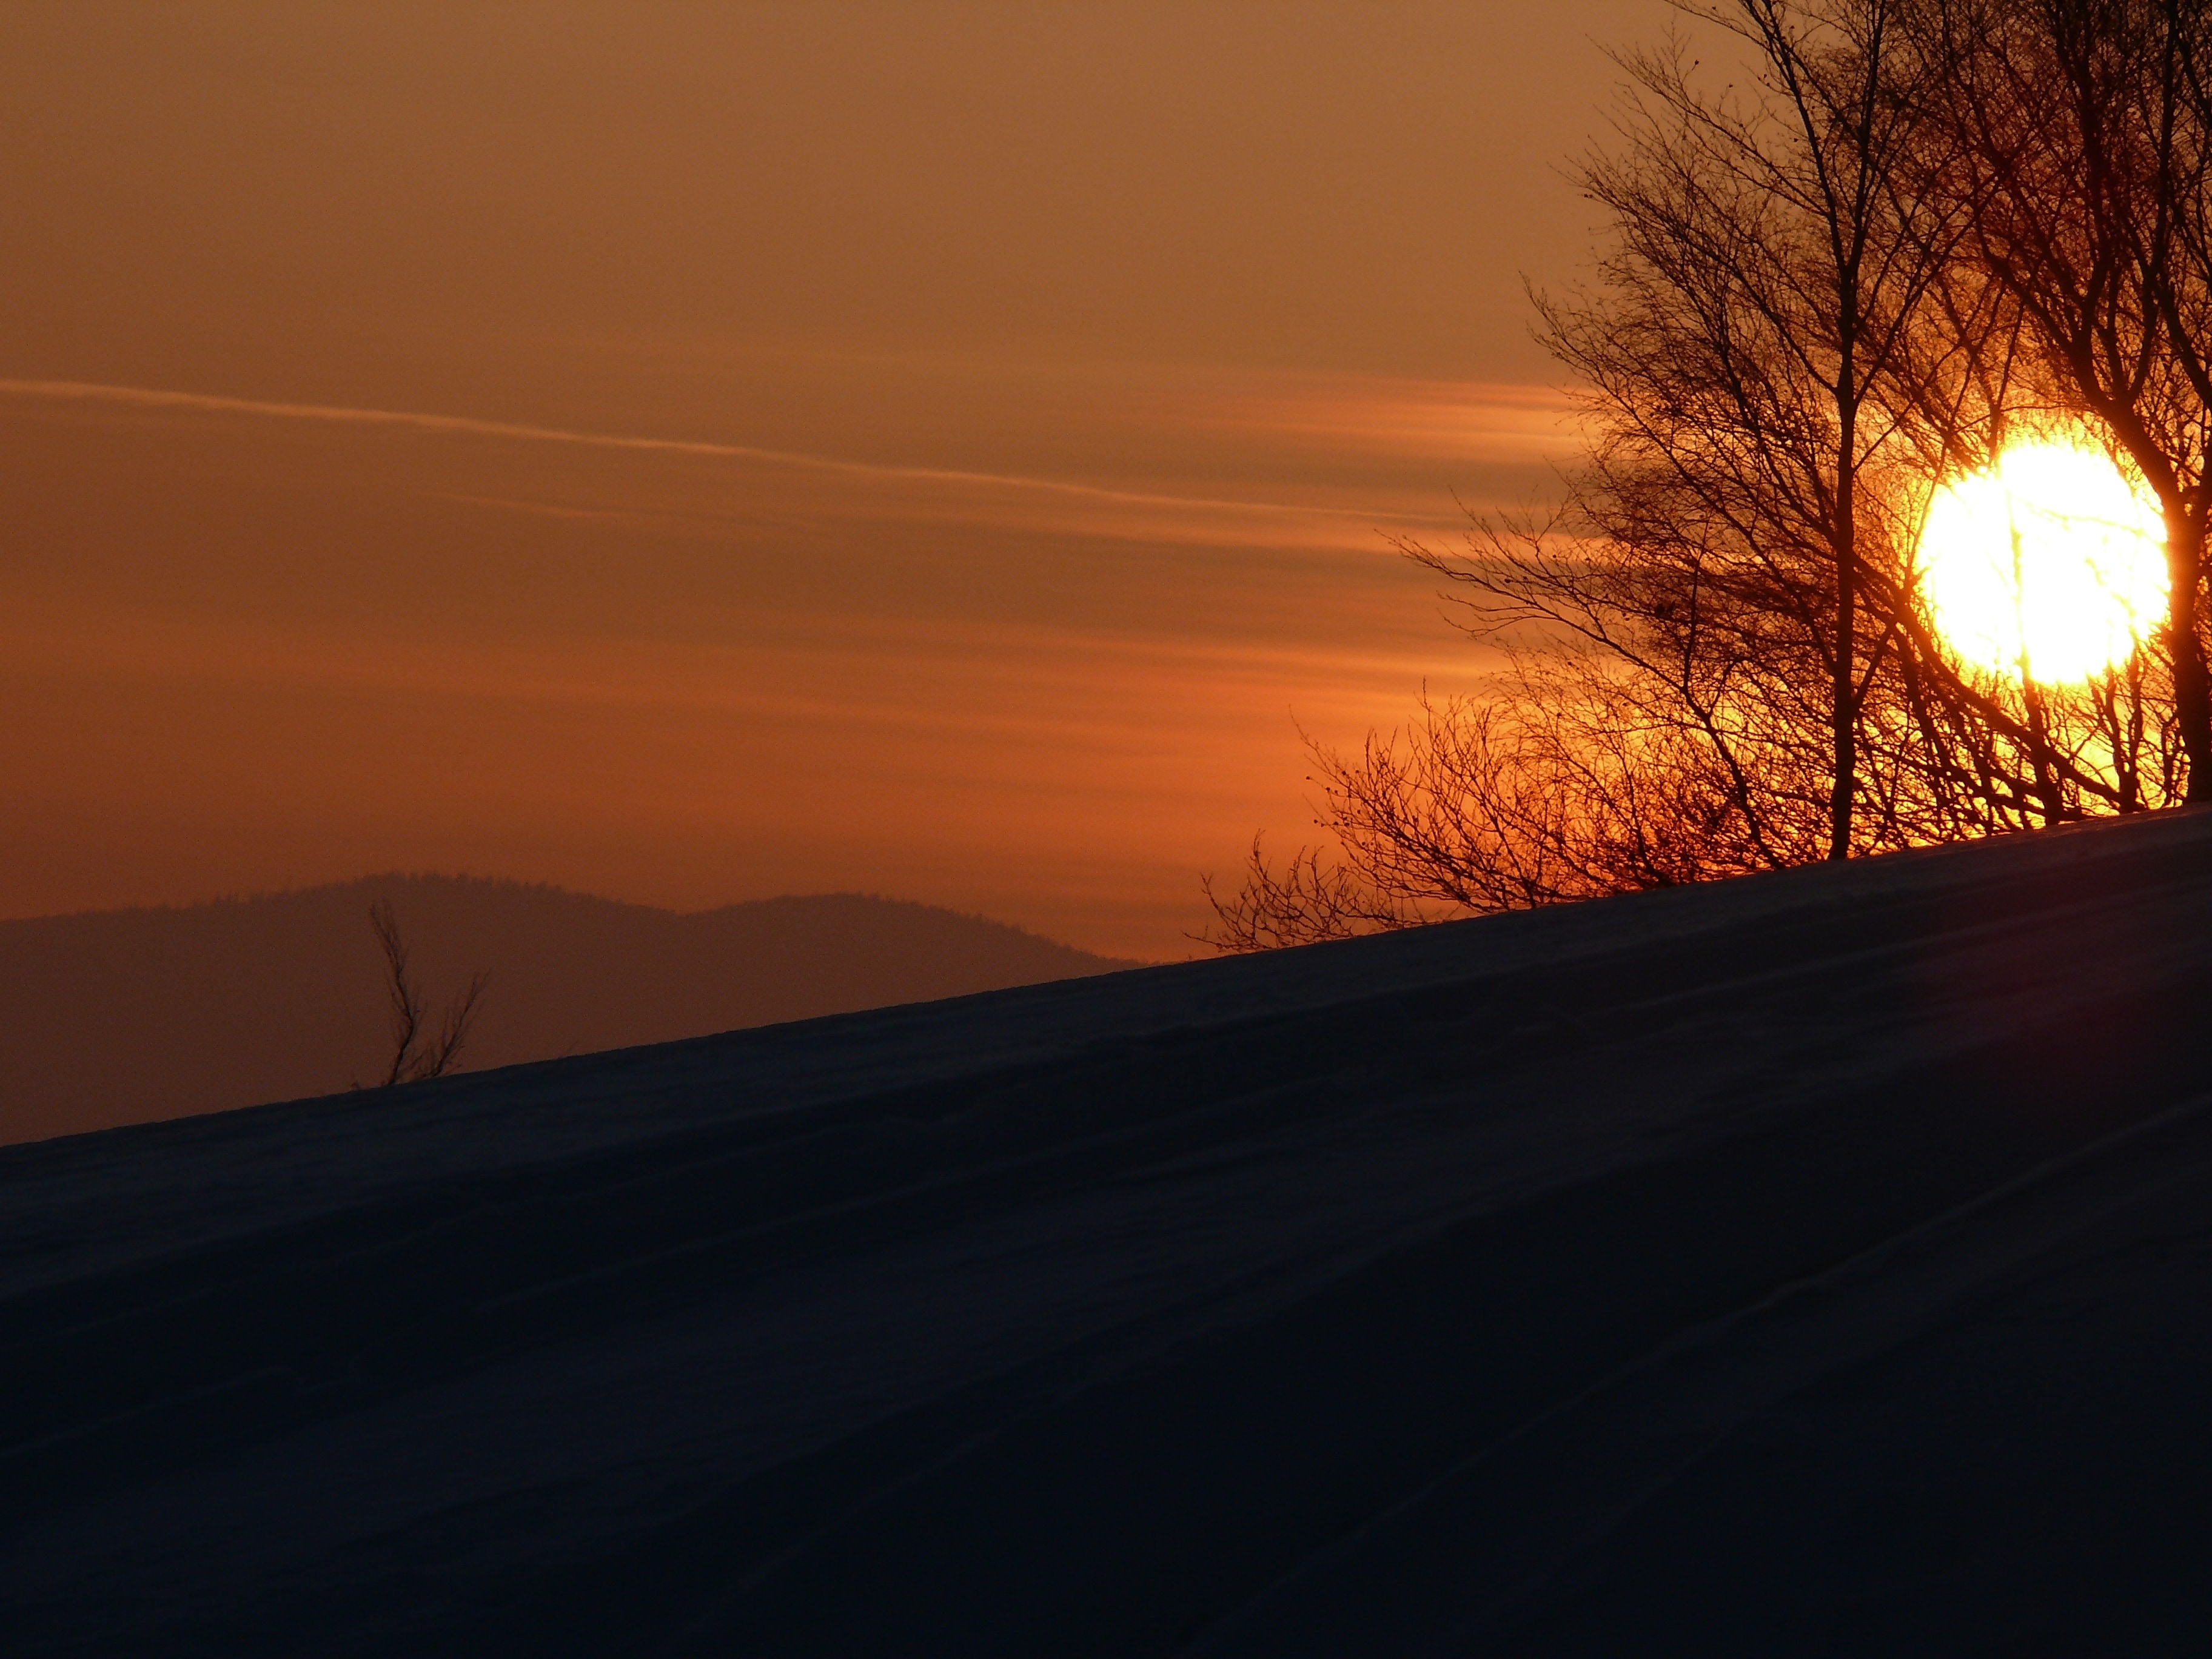 Snow, Winter, West, The Sun, sunset, orange color